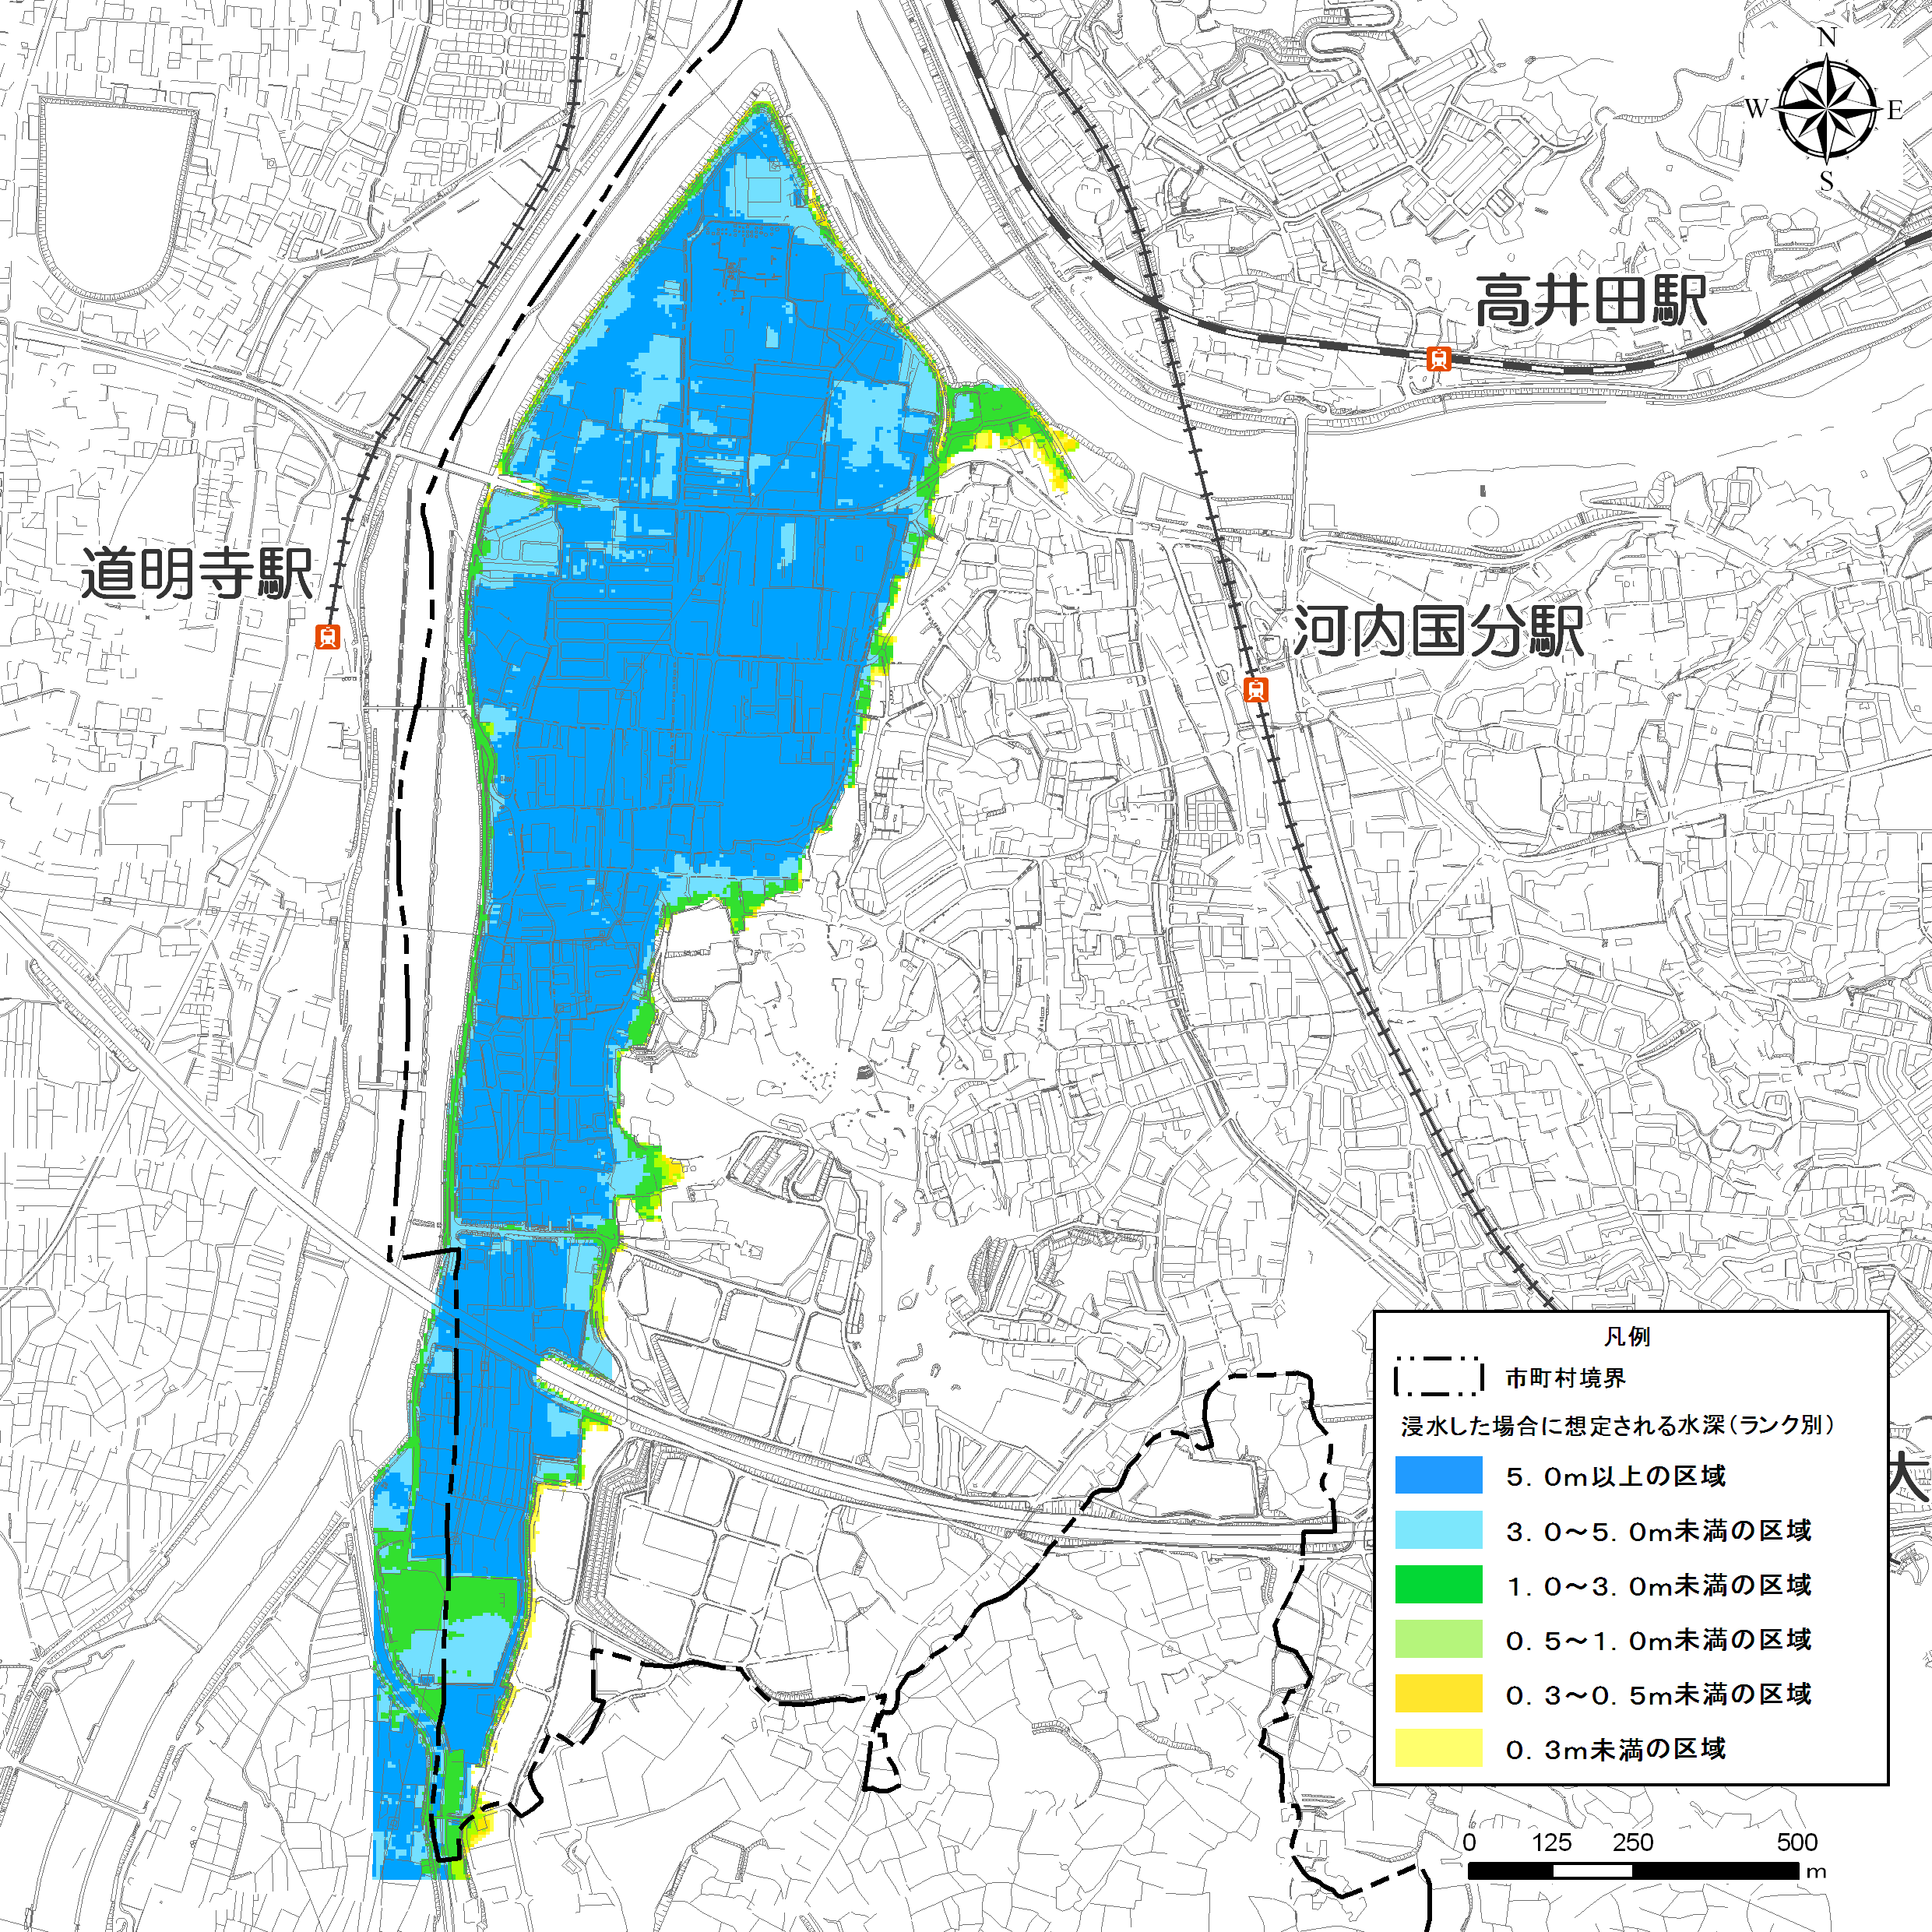 石川の洪水浸水想定区域図